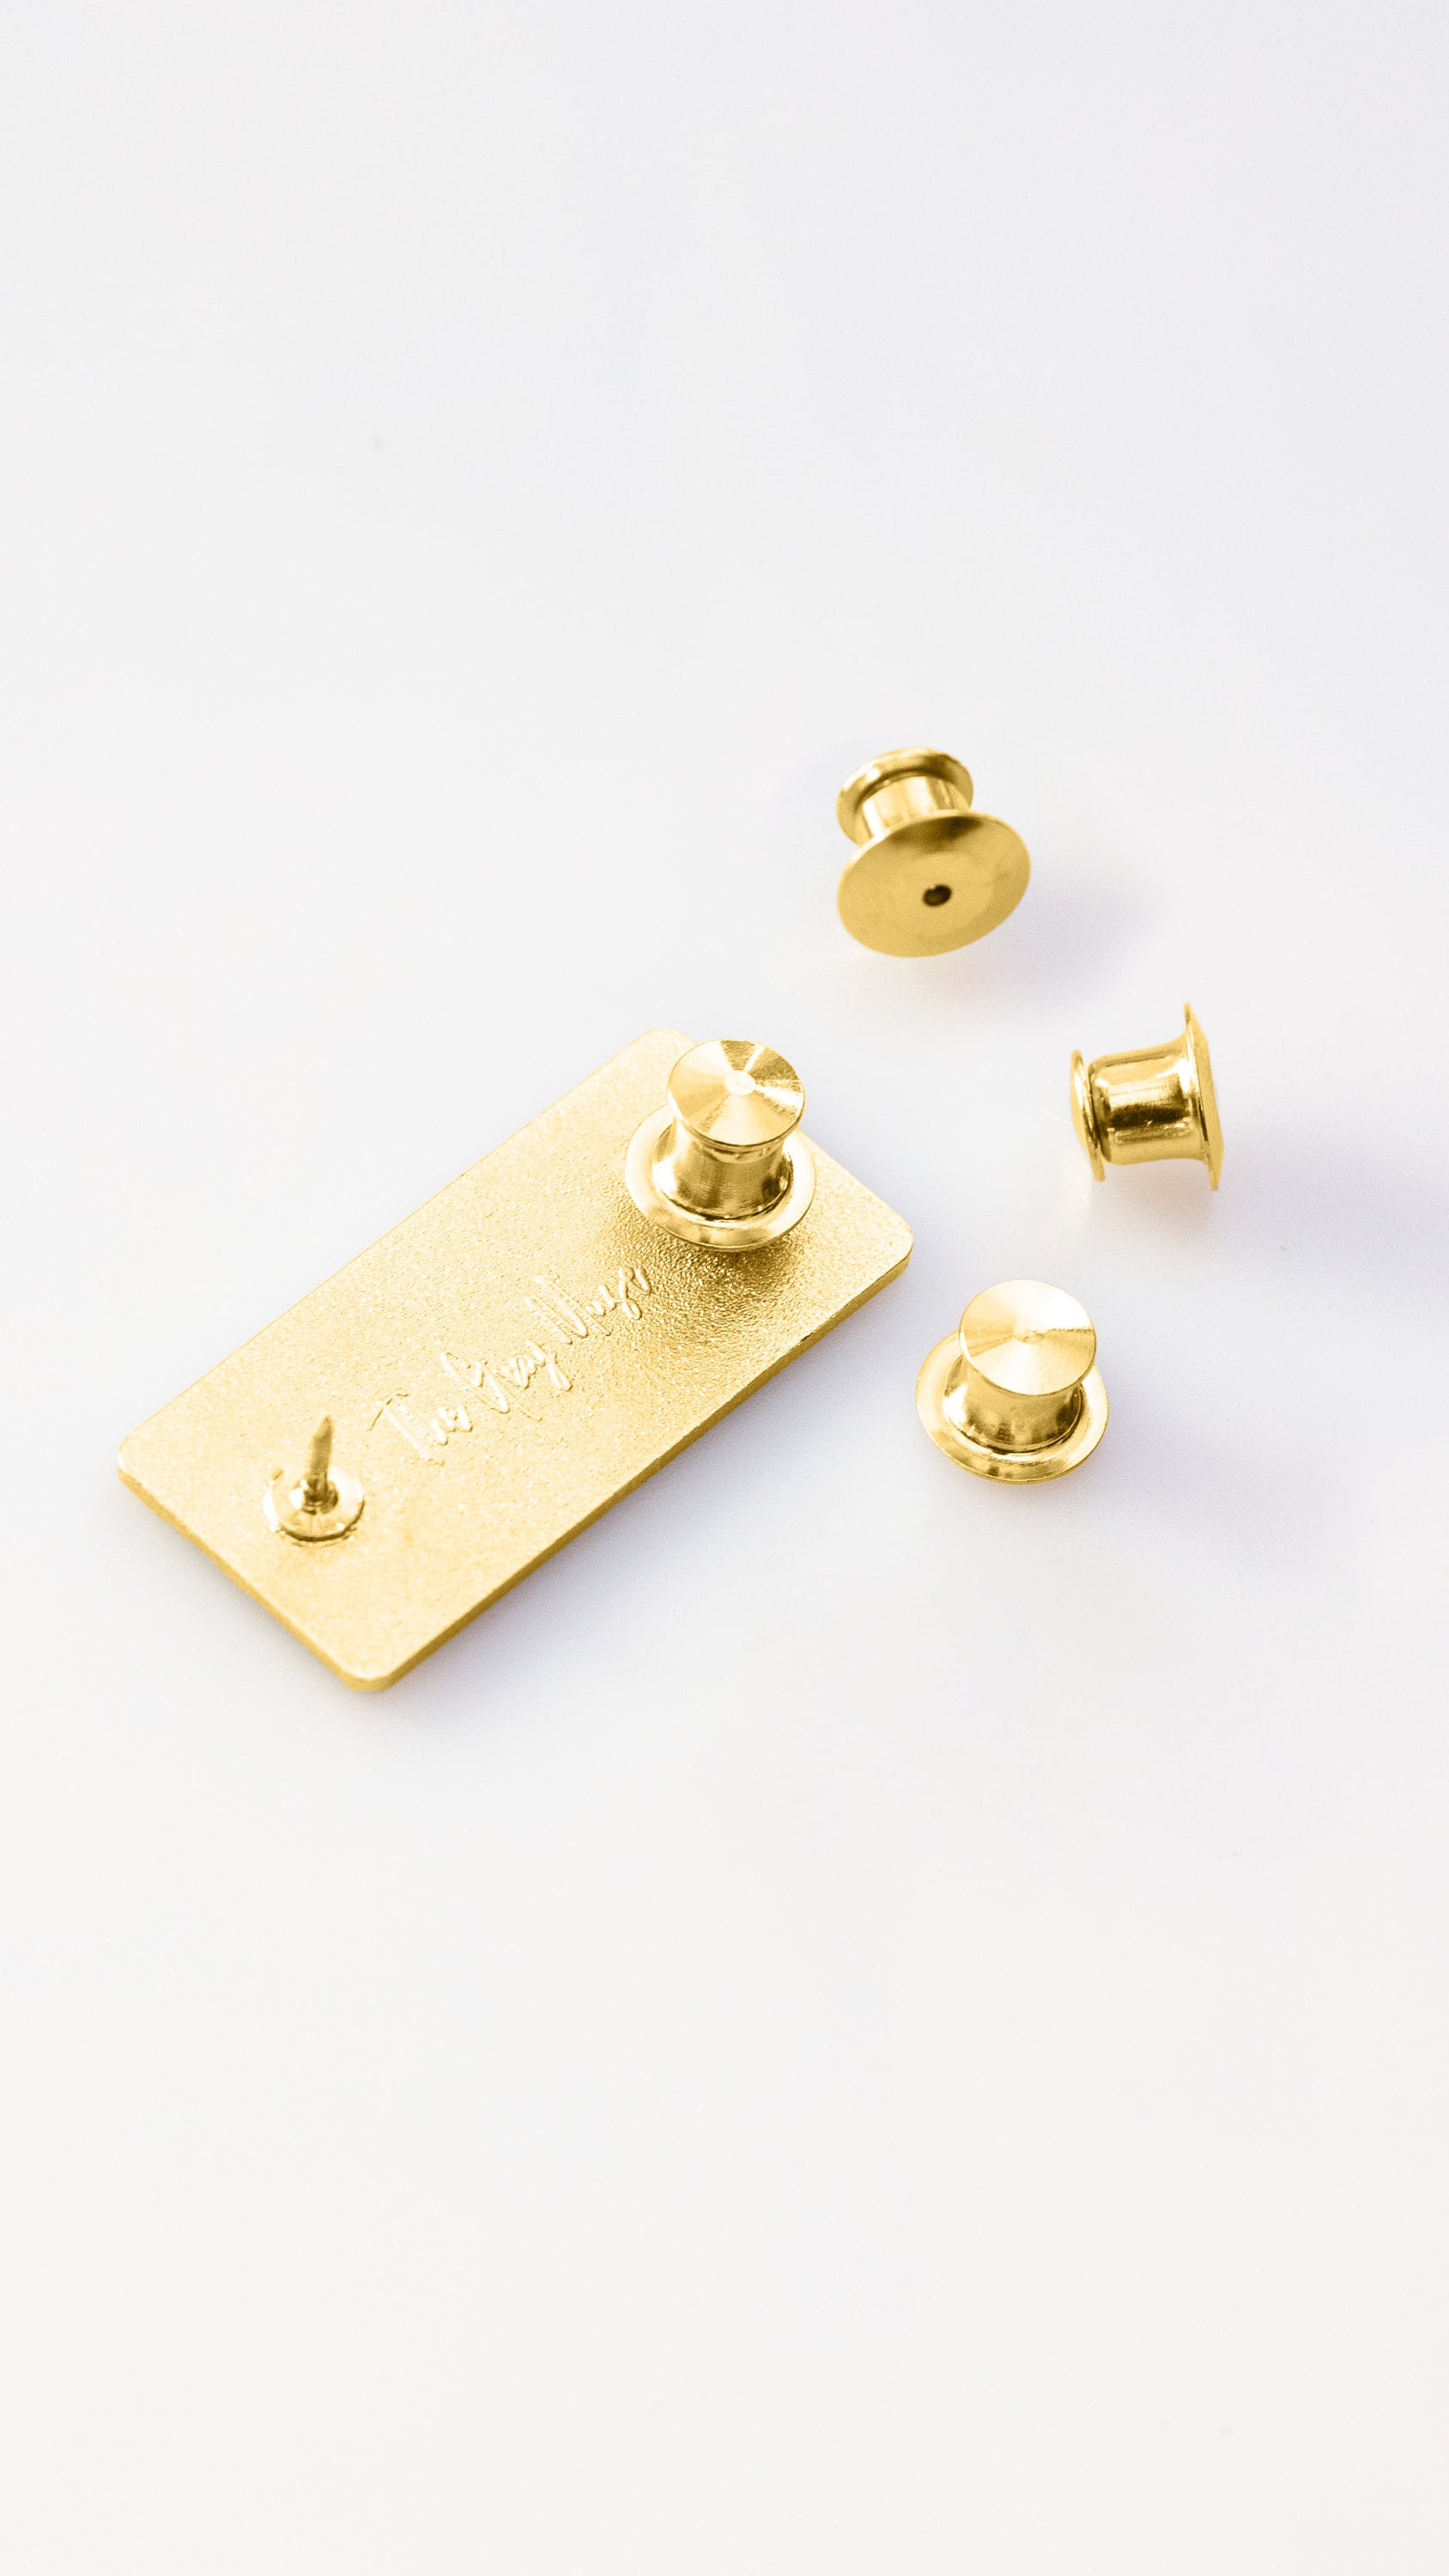 10 X Deluxe Golden Locking Pin Backs for Enamel Pins, Lapel Pins, Pin  Backs, Safety Backing, Pinback, 